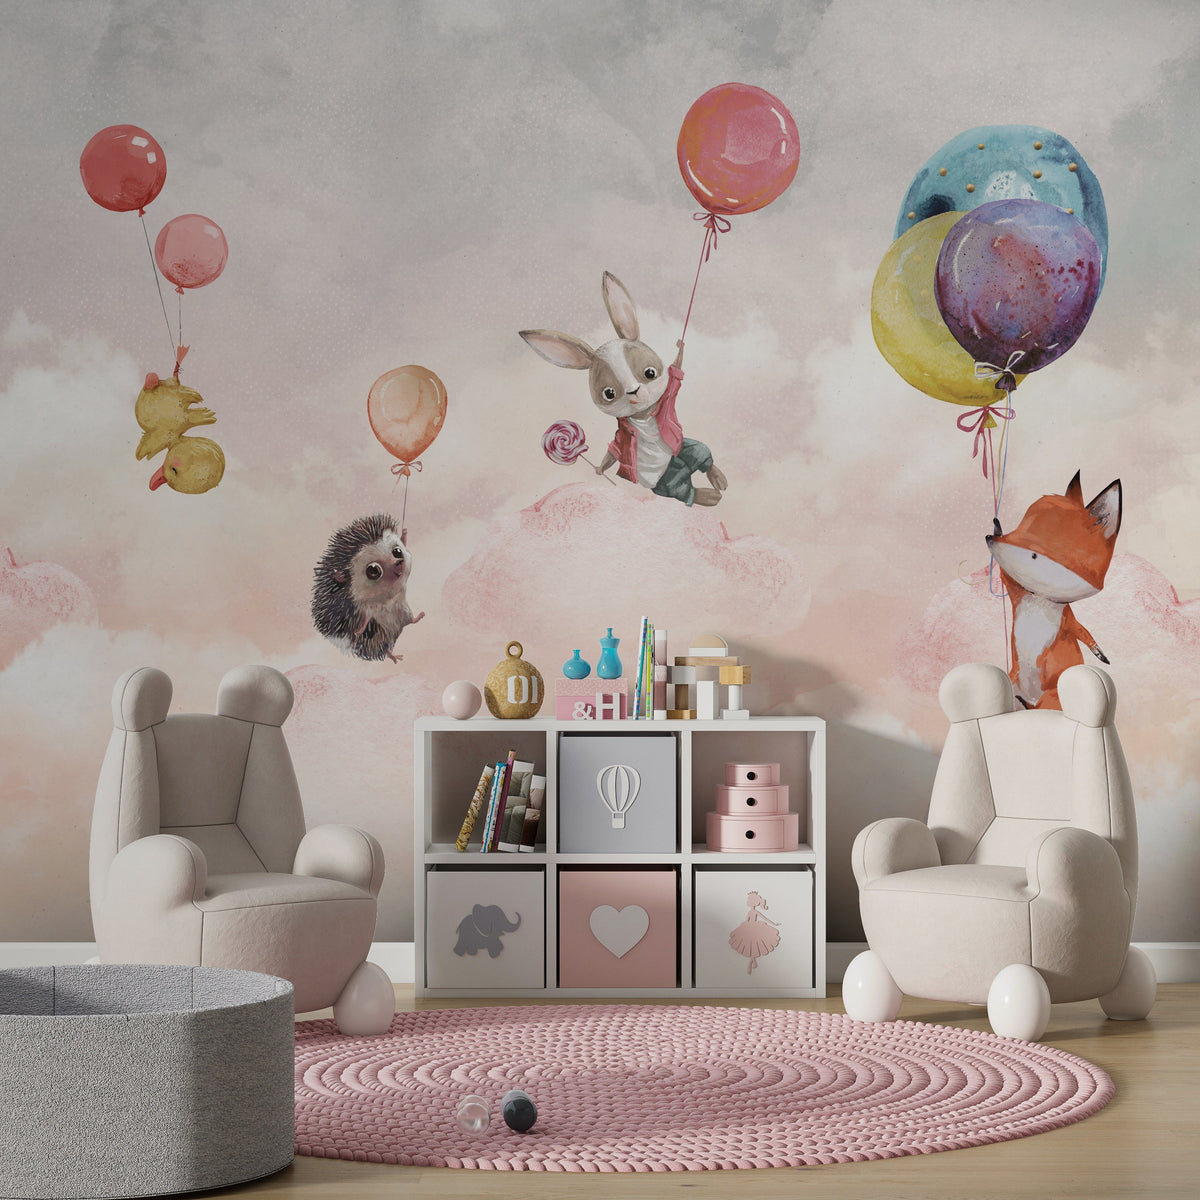 Tiere auf Ballon – Tapetenwandbild für Kinderzimmer